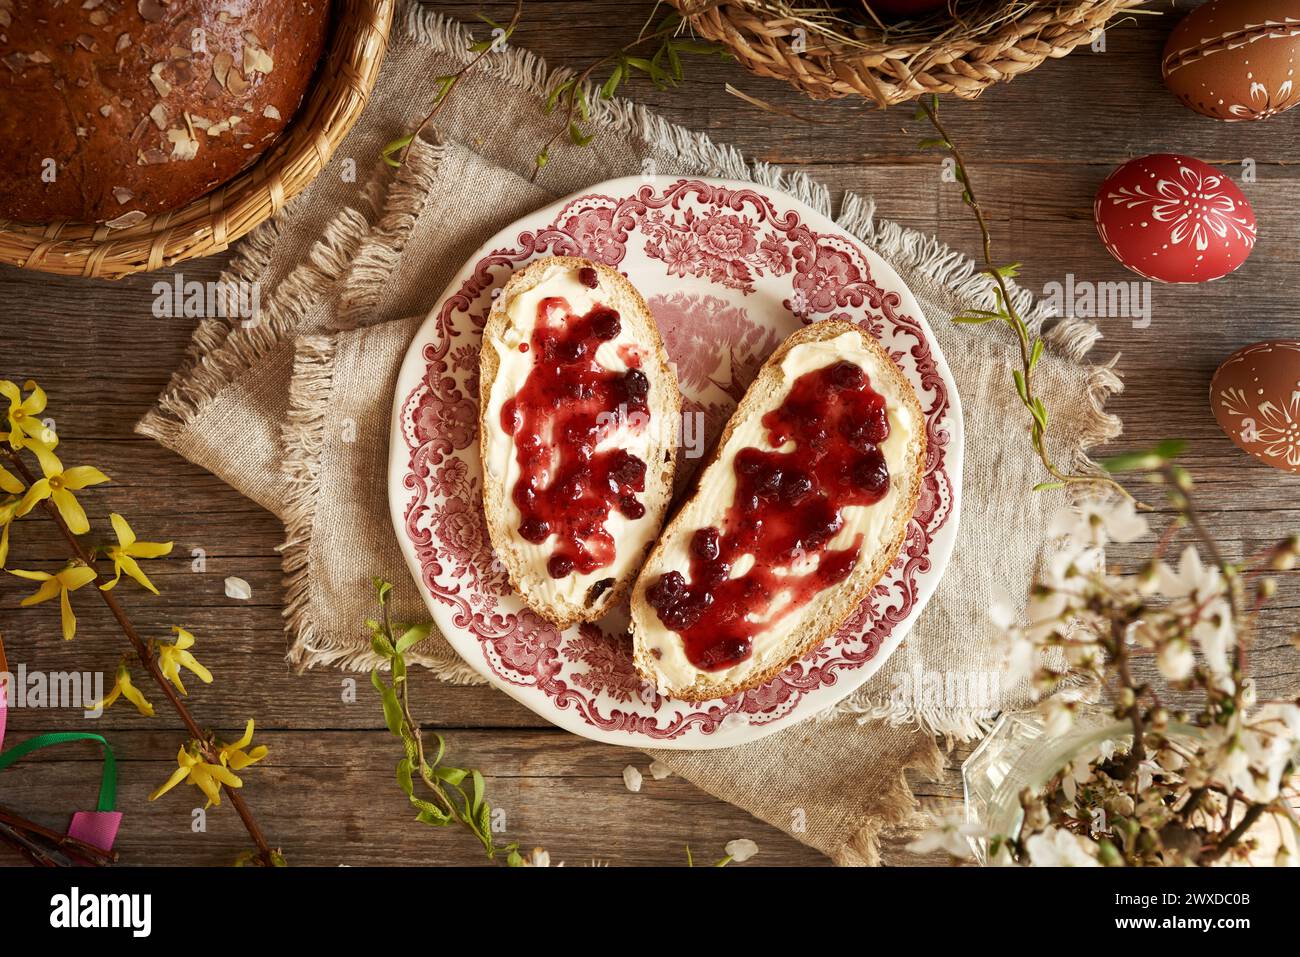 Due fette di dolce dolce dolce pasquale ceco chiamato mazanec con burro e marmellata rossa su un piatto, vista dall'alto Foto Stock